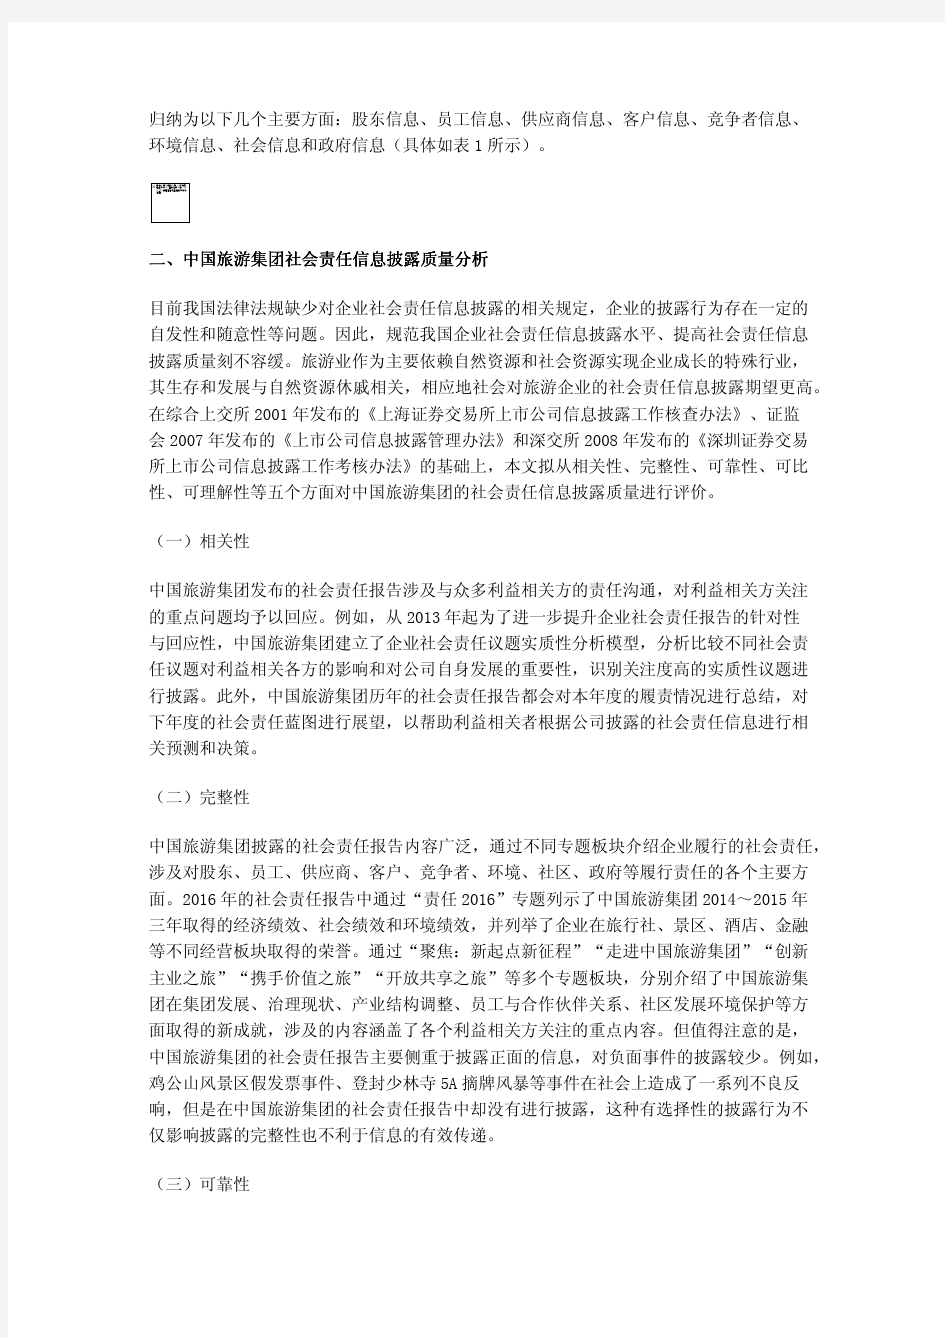 中国旅游集团社会责任信息披露质量分析和启示